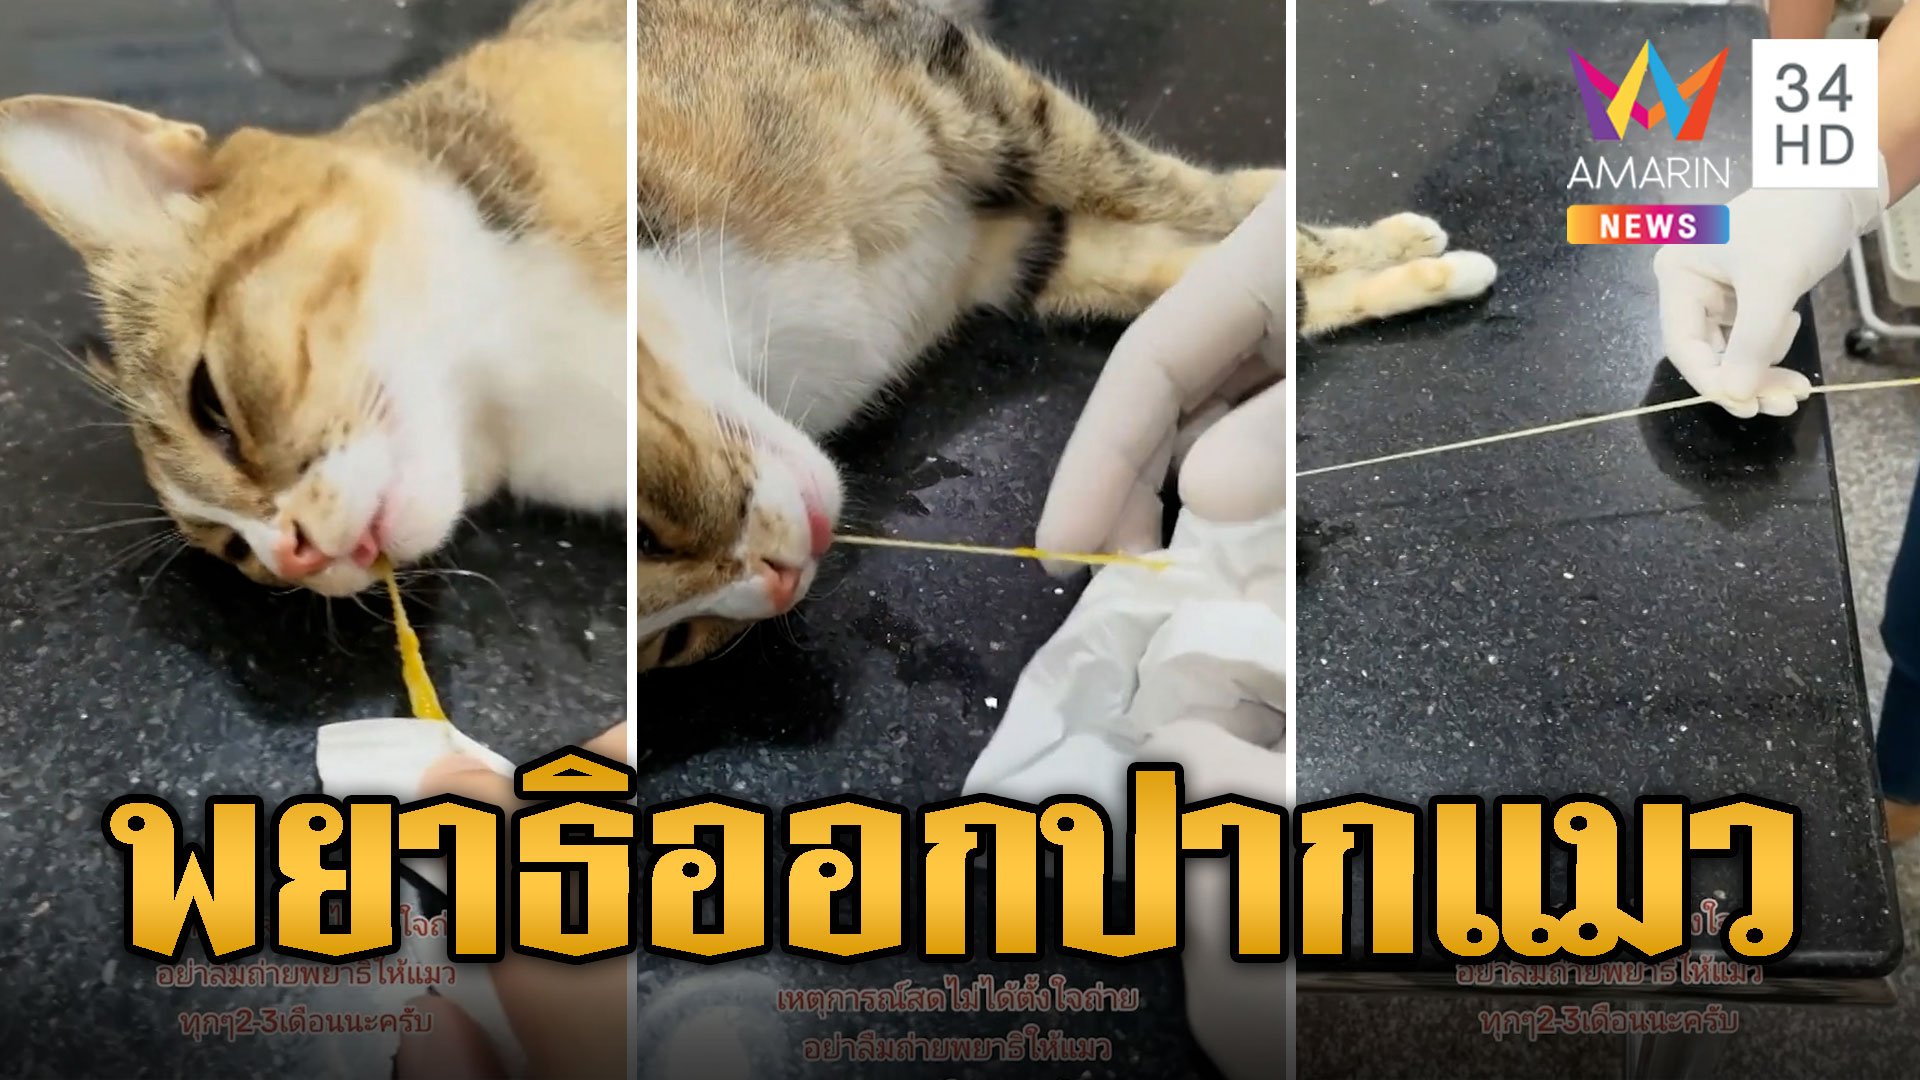 ร้องลั่นคลินิก! วางยาสลบแมว พยาธิอยู่ไม่ได้คลานออกจากปากตอนหลับ | ข่าวอรุณอมรินทร์ | 27 ธ.ค. 66 | AMARIN TVHD34